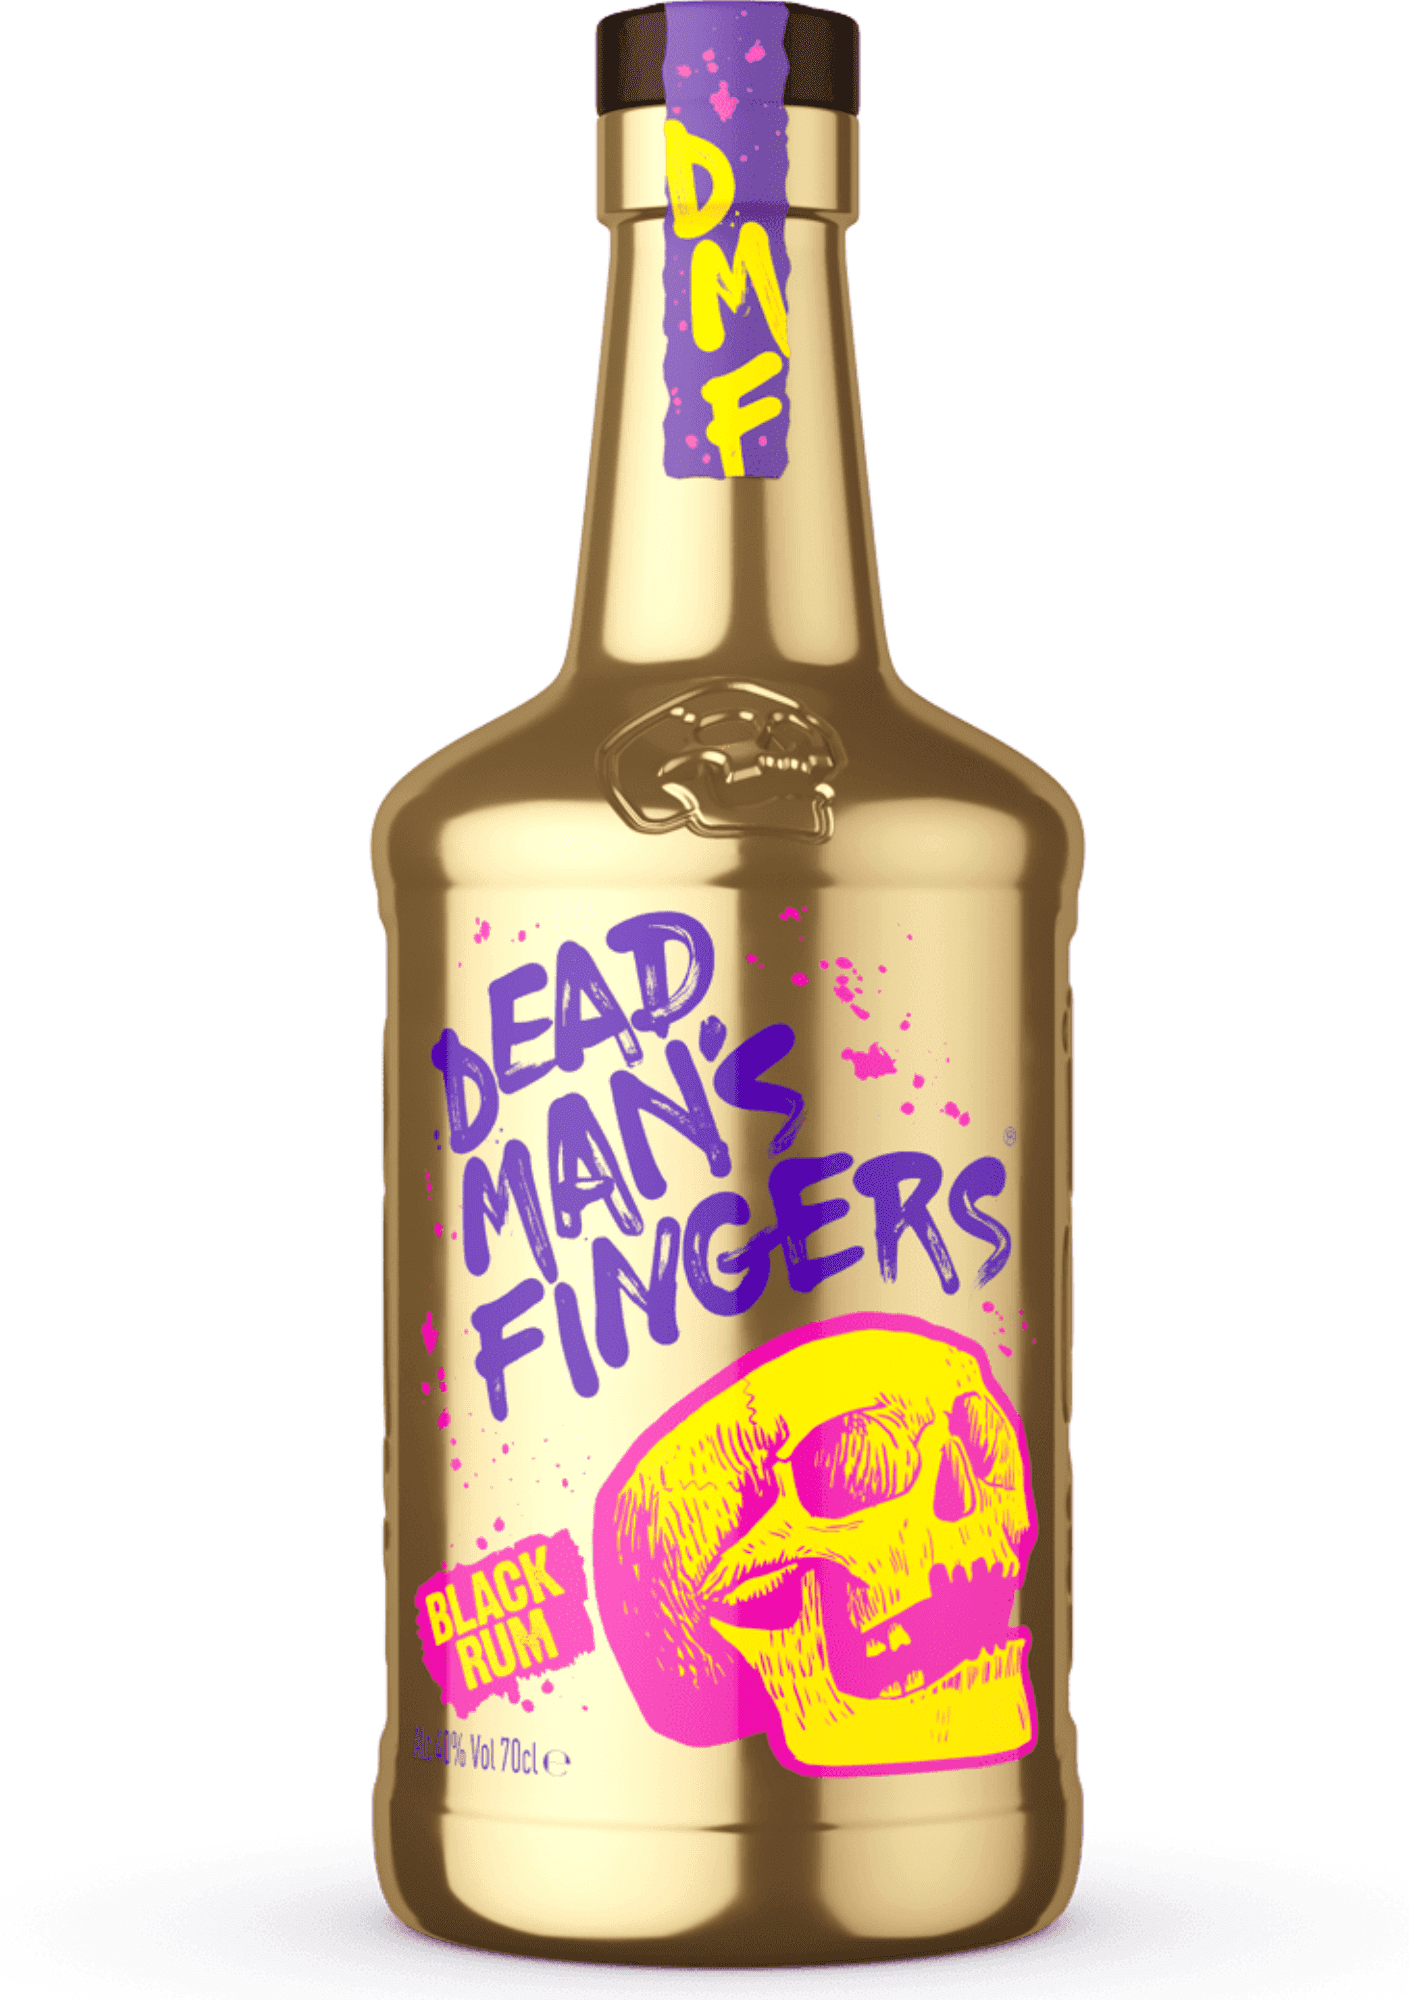 Dead Man's Fingers Black Rum 37,5% 0,7 l